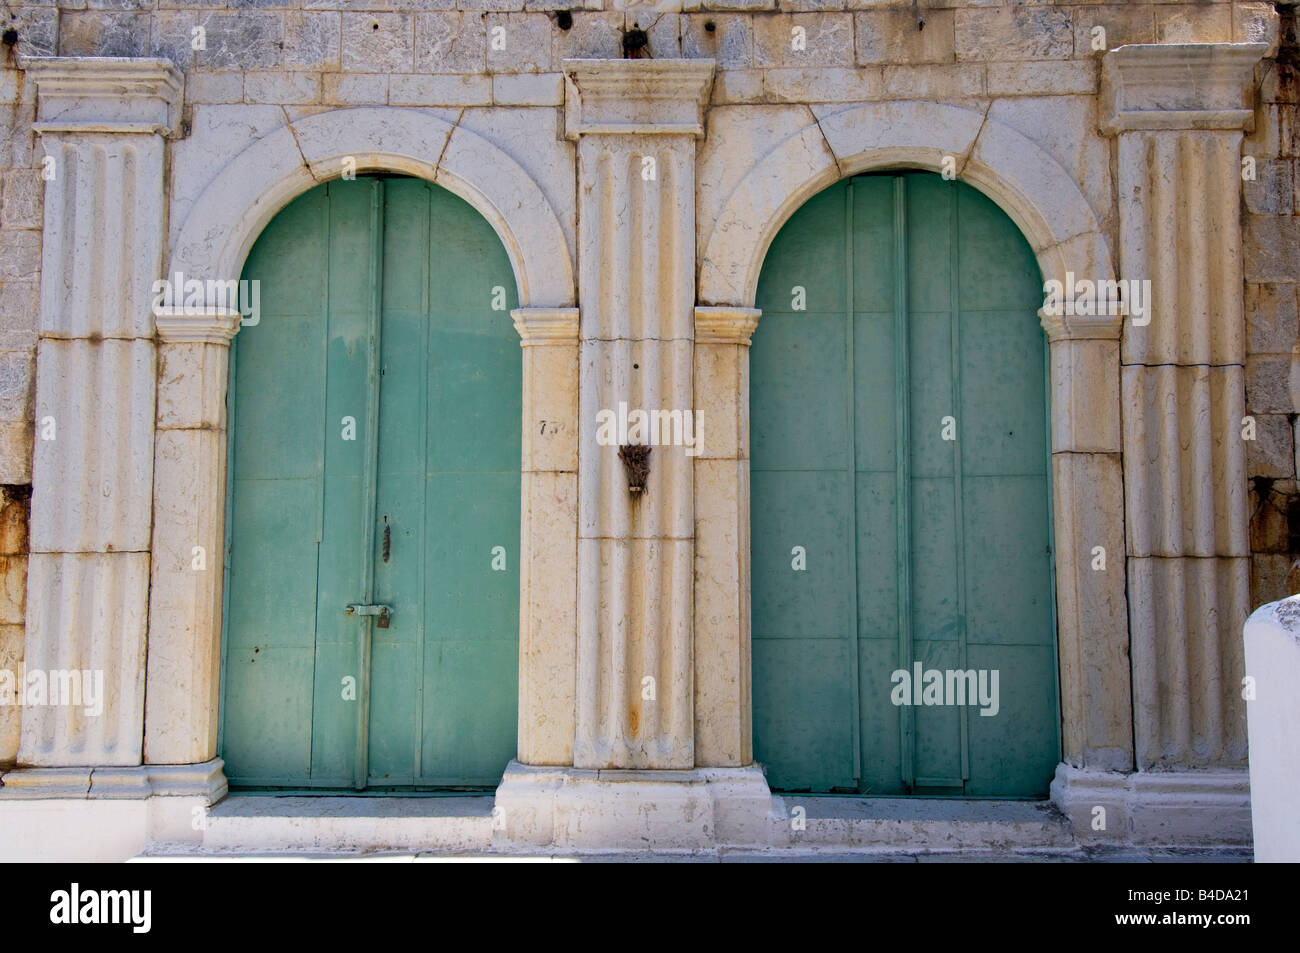 Ein Haus mit grünen Fensterläden Türen auf der Kali Strata auf der griechischen Insel Symi Griechenland Stockfoto